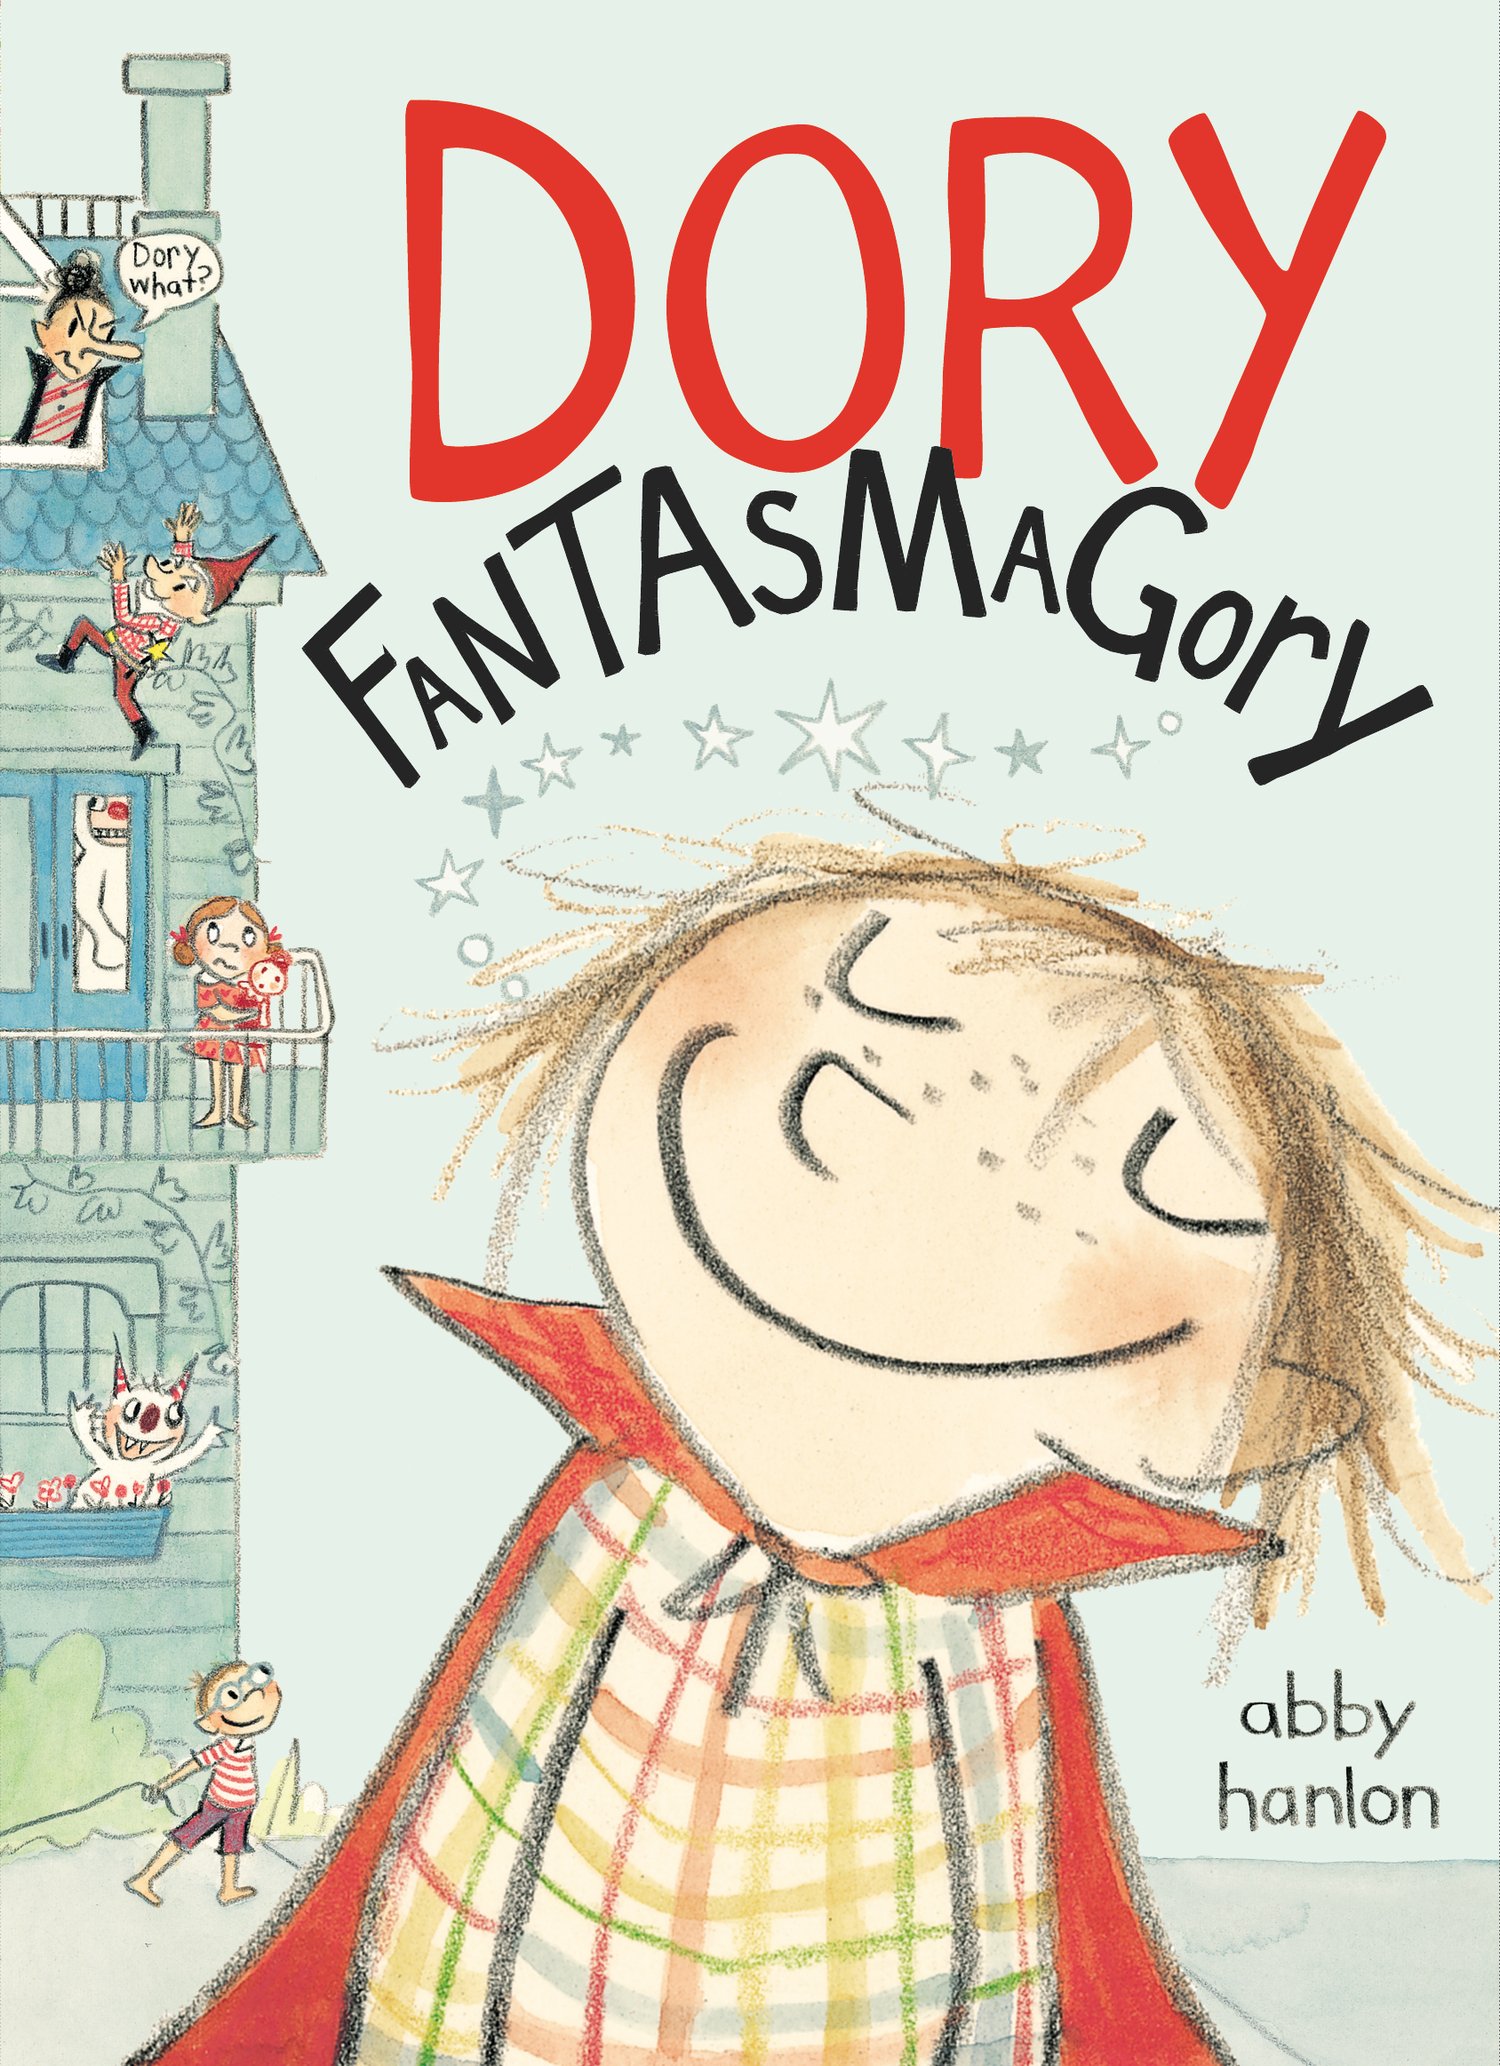 View description for 'Dory Fantasmagory'